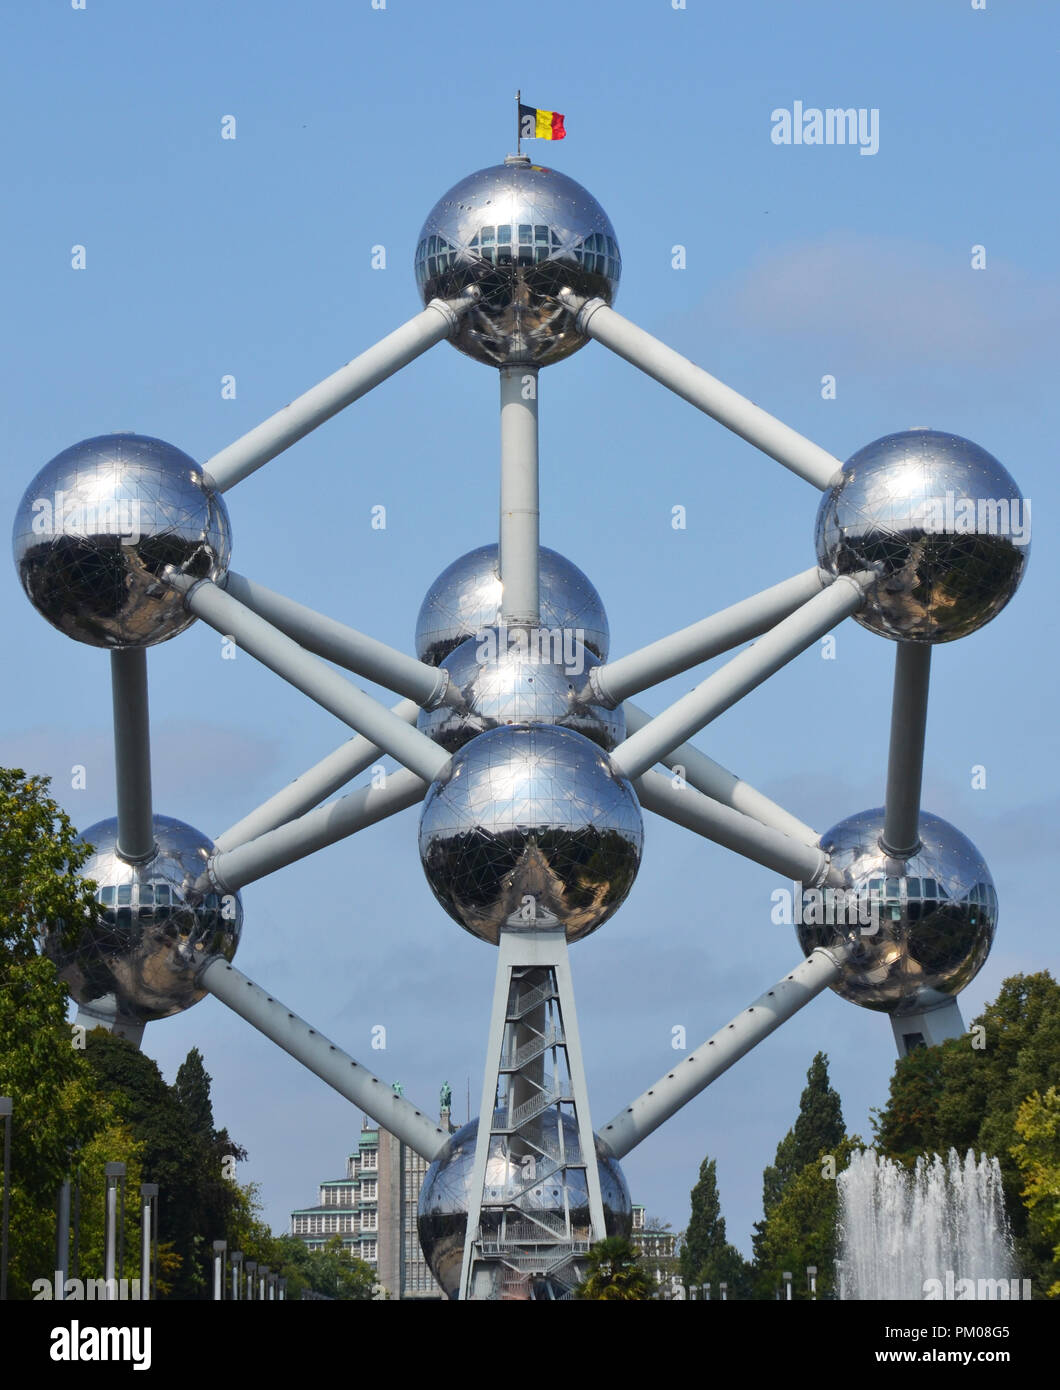 Bruxelles, Belgique - 19 août 2018 : Atomium bâtiment construit pour Expo 58, l'Exposition Universelle de Bruxelles de 1958, à Bruxelles, Belgique. Banque D'Images